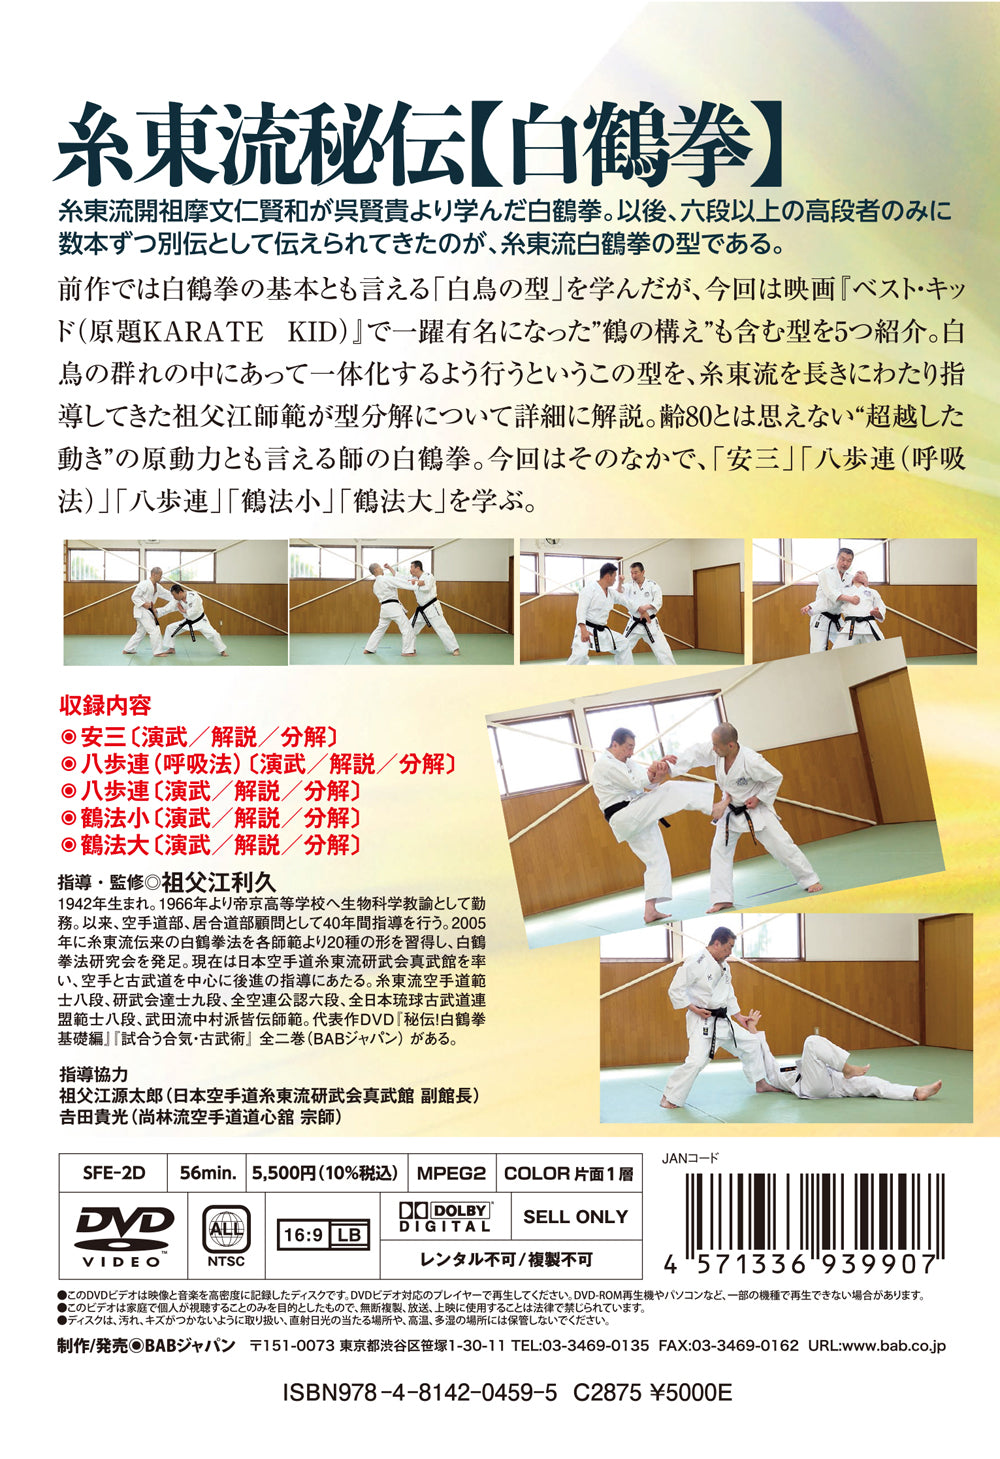 Hakutsuru Ken (White Crane) DVD 2: Way of Shito Ryu by Sofue Toshihisa